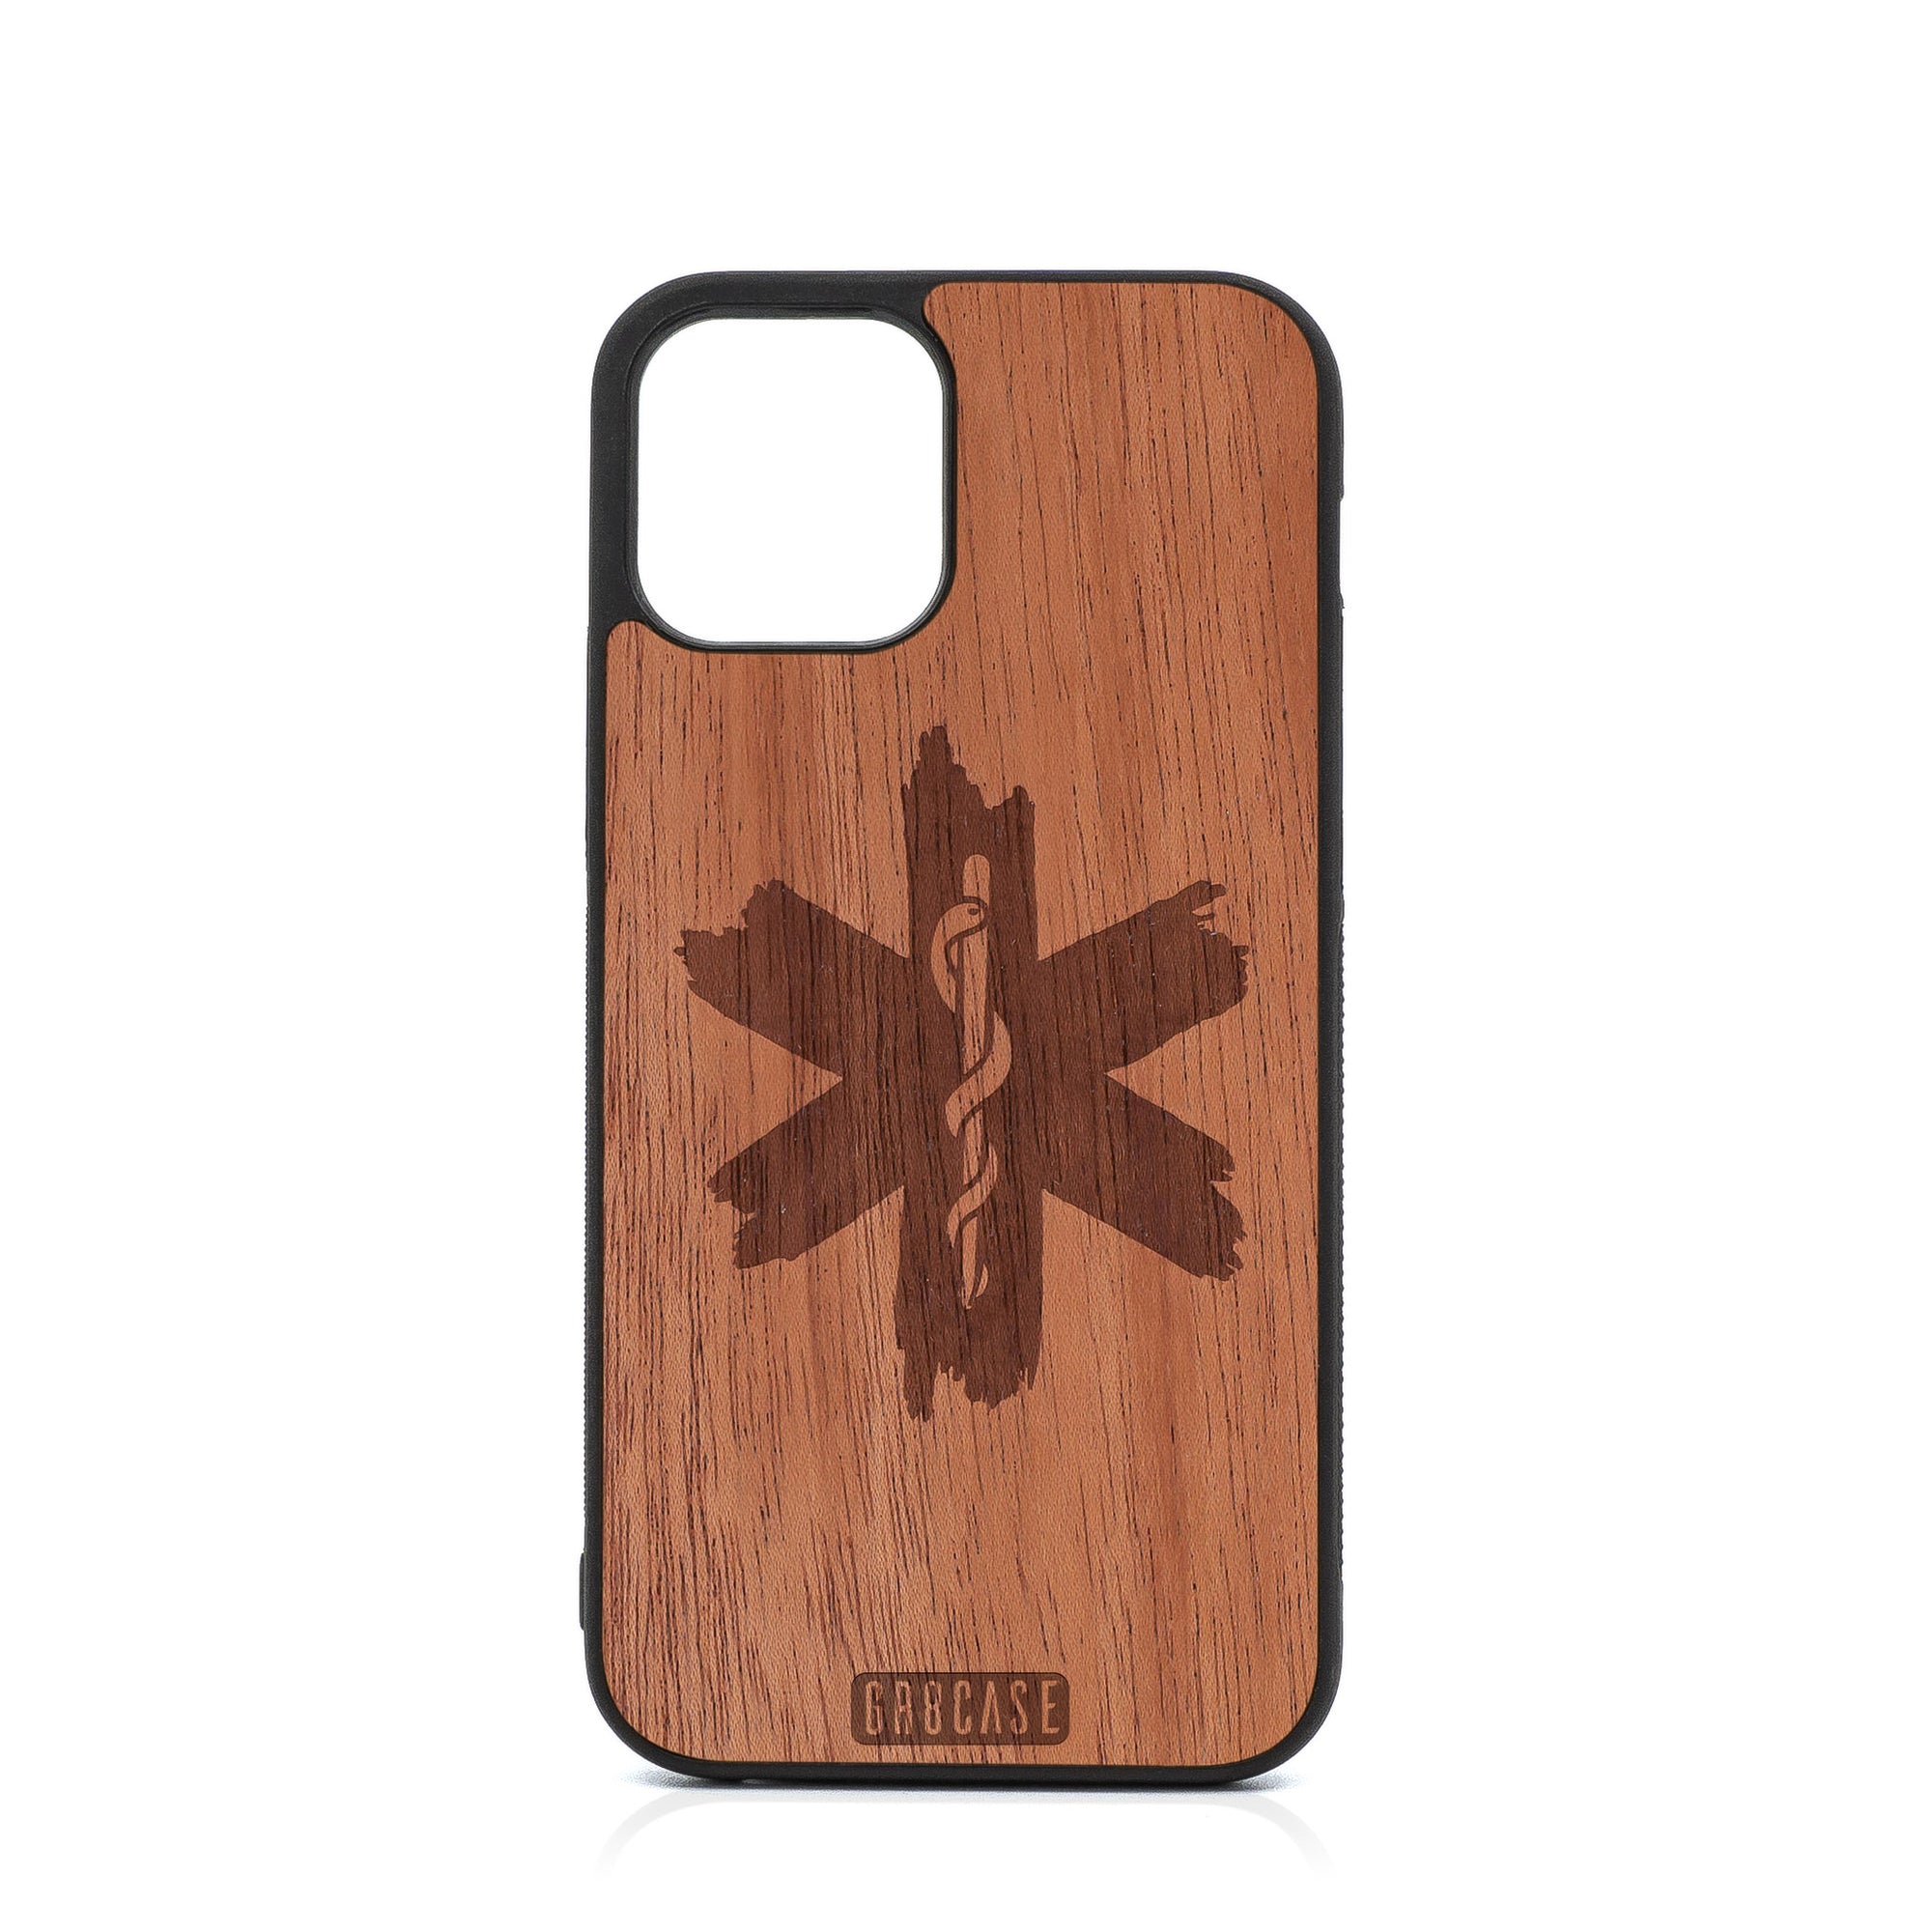 EMT Design Wood Case For iPhone 12